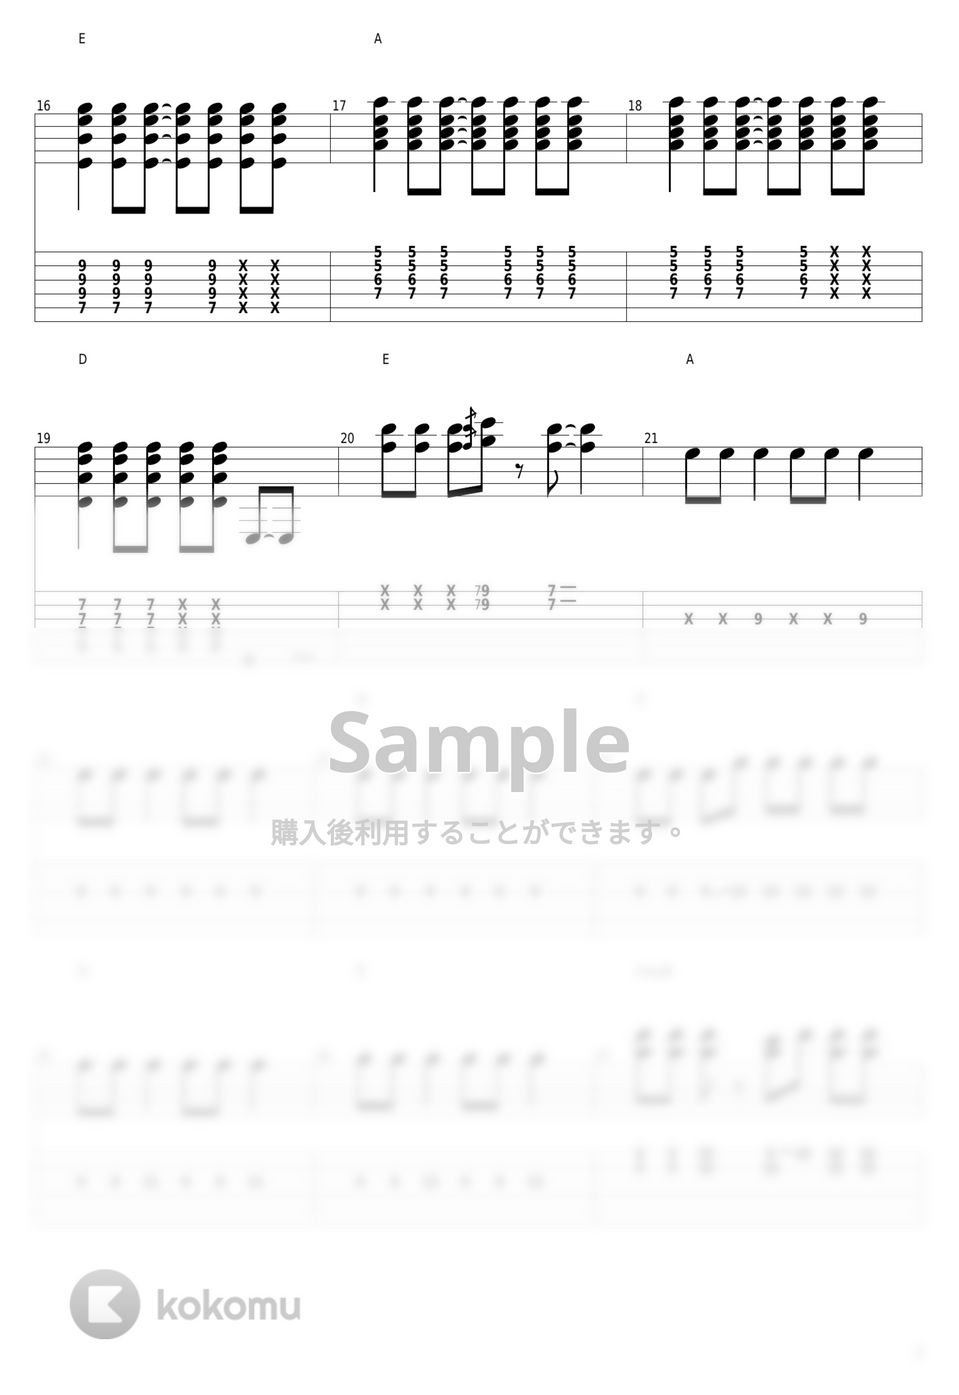 放課後ティータイム - U&I by guitar cover with tab